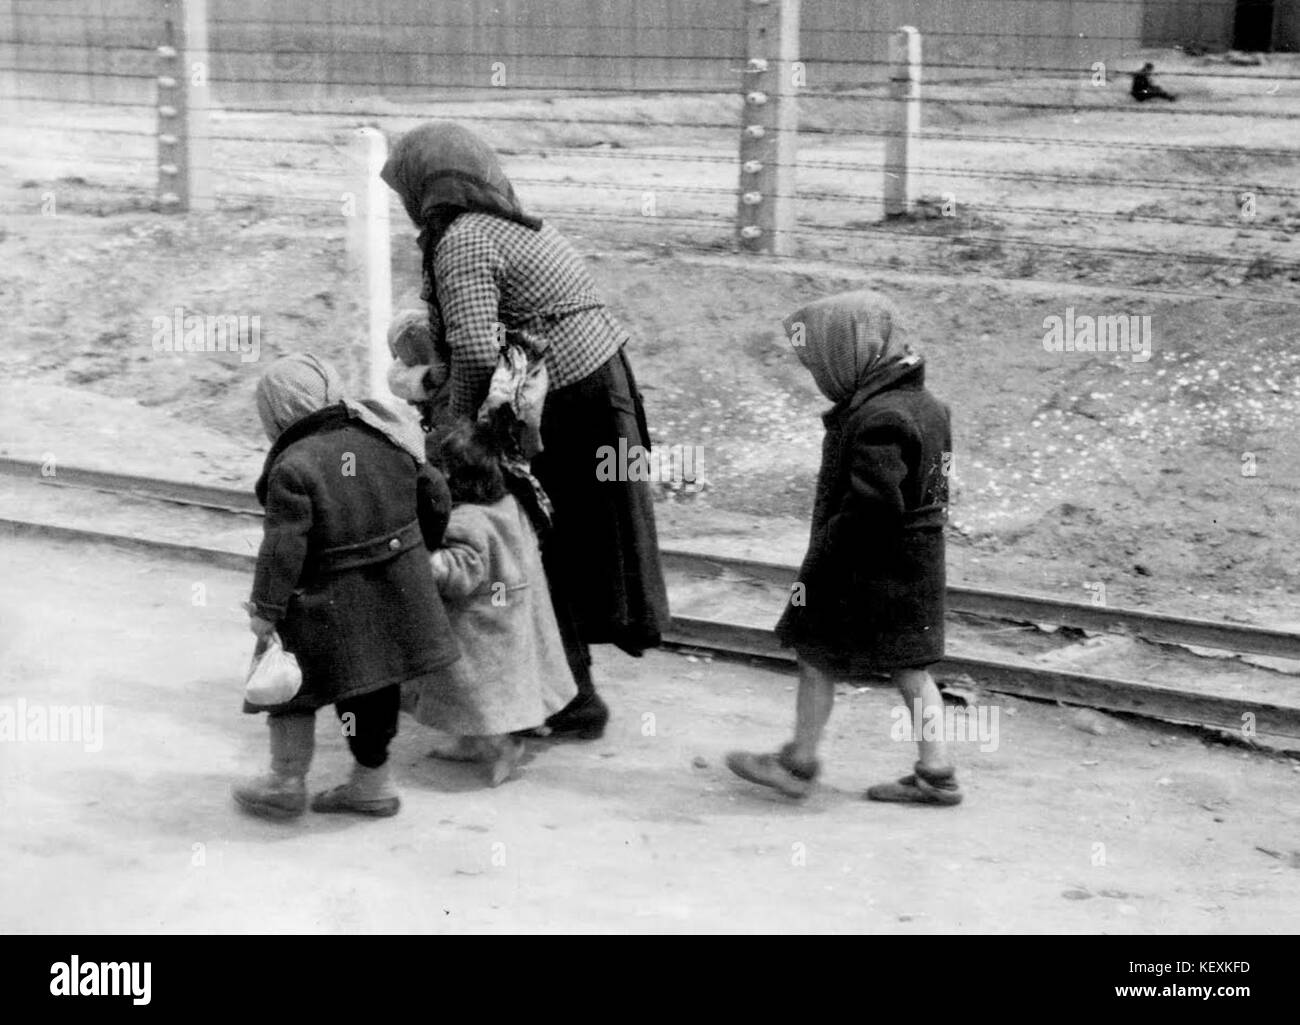 Bundesarchiv Bild 183 74237 004, KZ Auschwitz Birkenau, alte Frau und ...